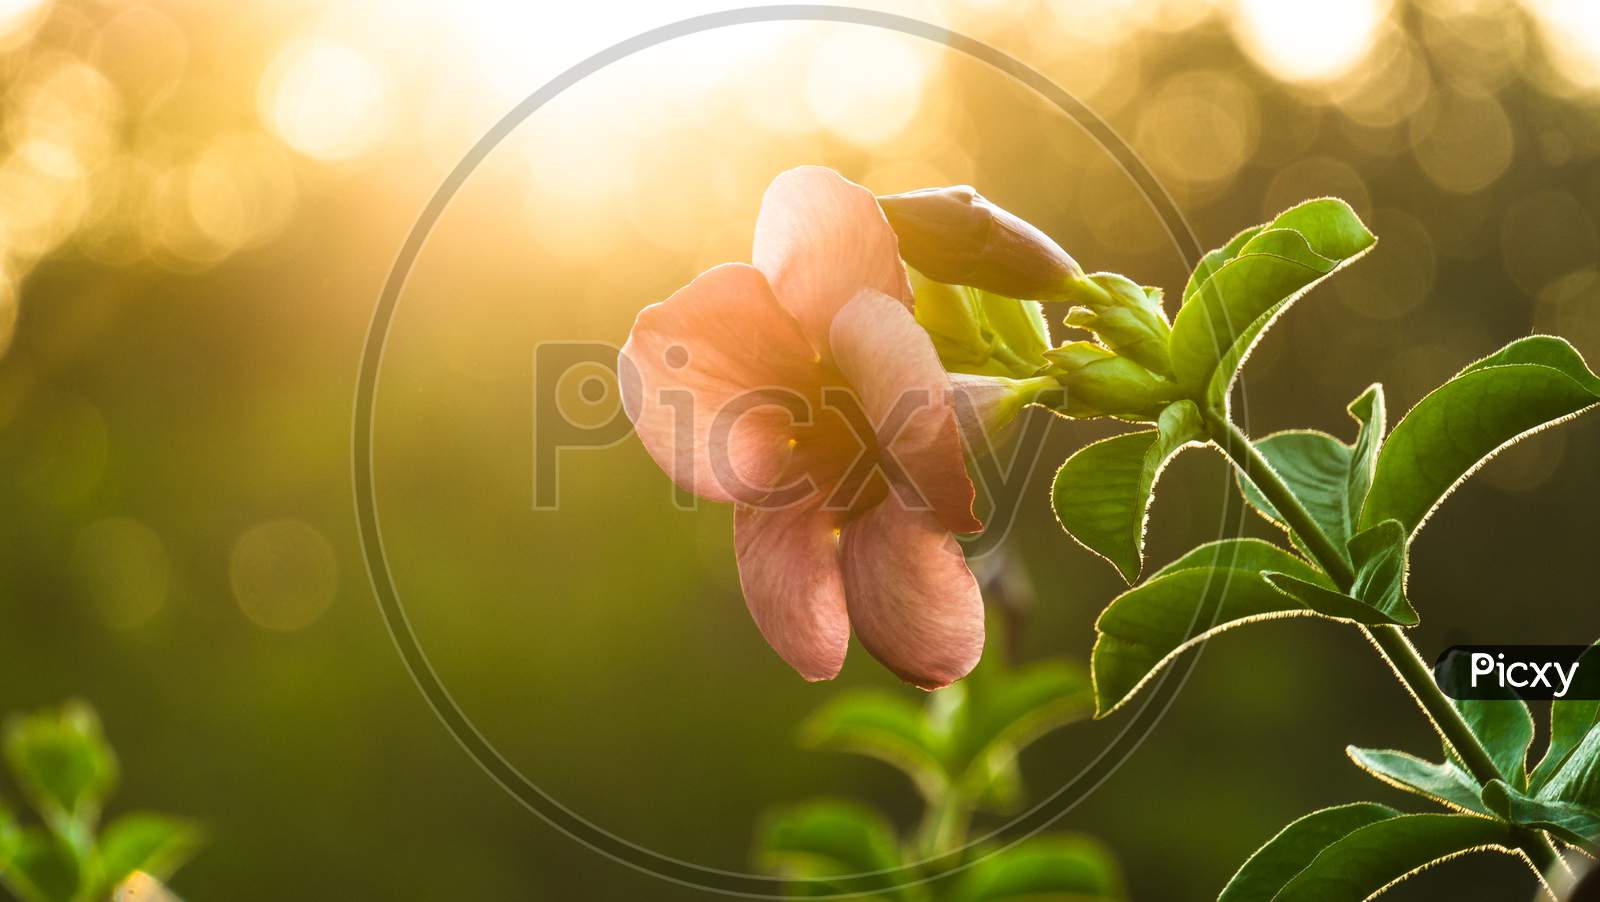 Frangipani Flower or Plumeria Flower